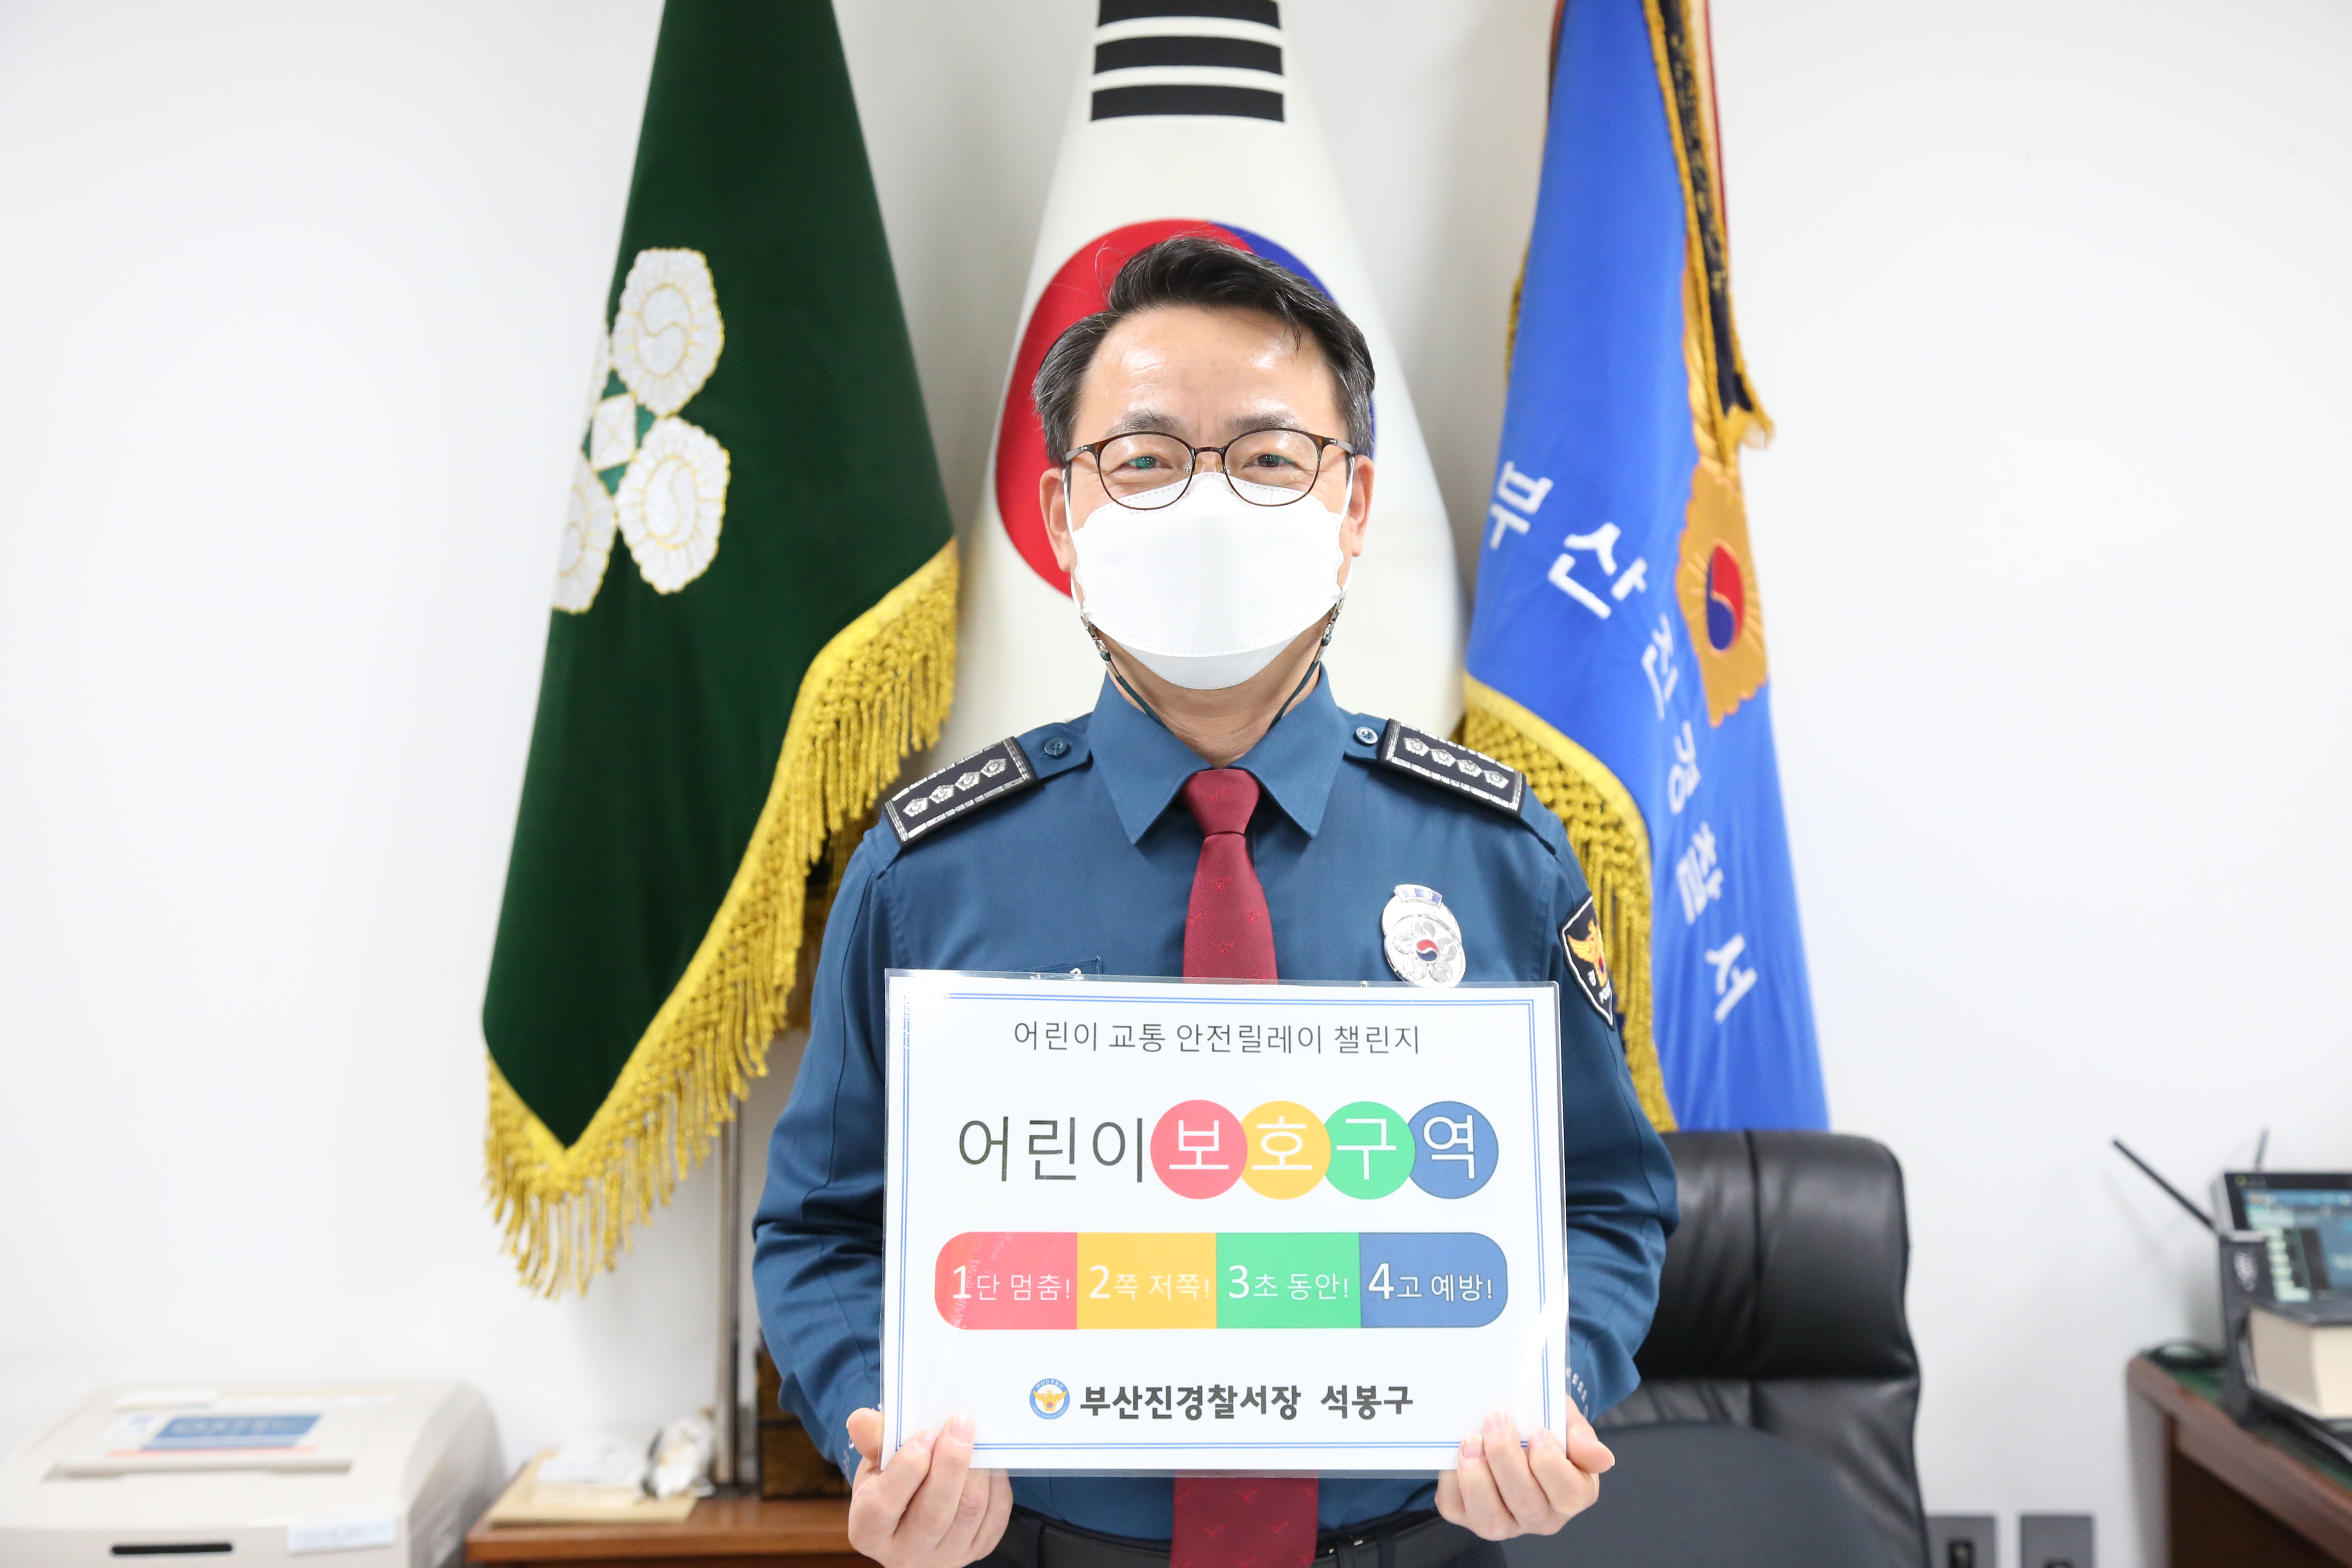 석봉구 부산진경찰서장님의 어린이 교통안전 1234 캠페인 참여